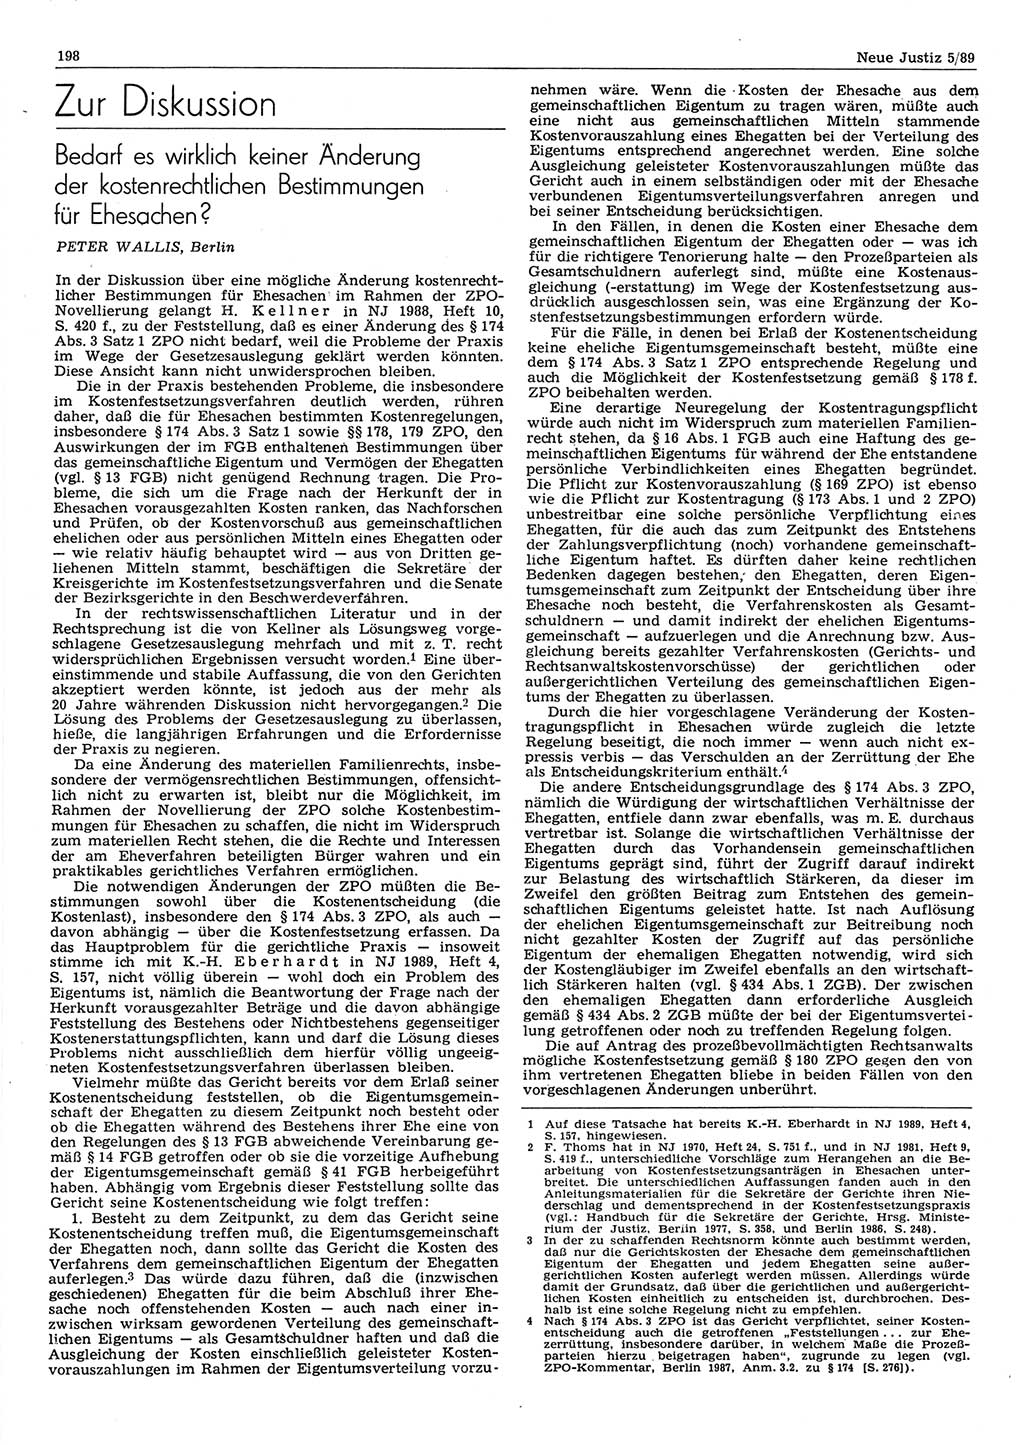 Neue Justiz (NJ), Zeitschrift für sozialistisches Recht und Gesetzlichkeit [Deutsche Demokratische Republik (DDR)], 43. Jahrgang 1989, Seite 198 (NJ DDR 1989, S. 198)